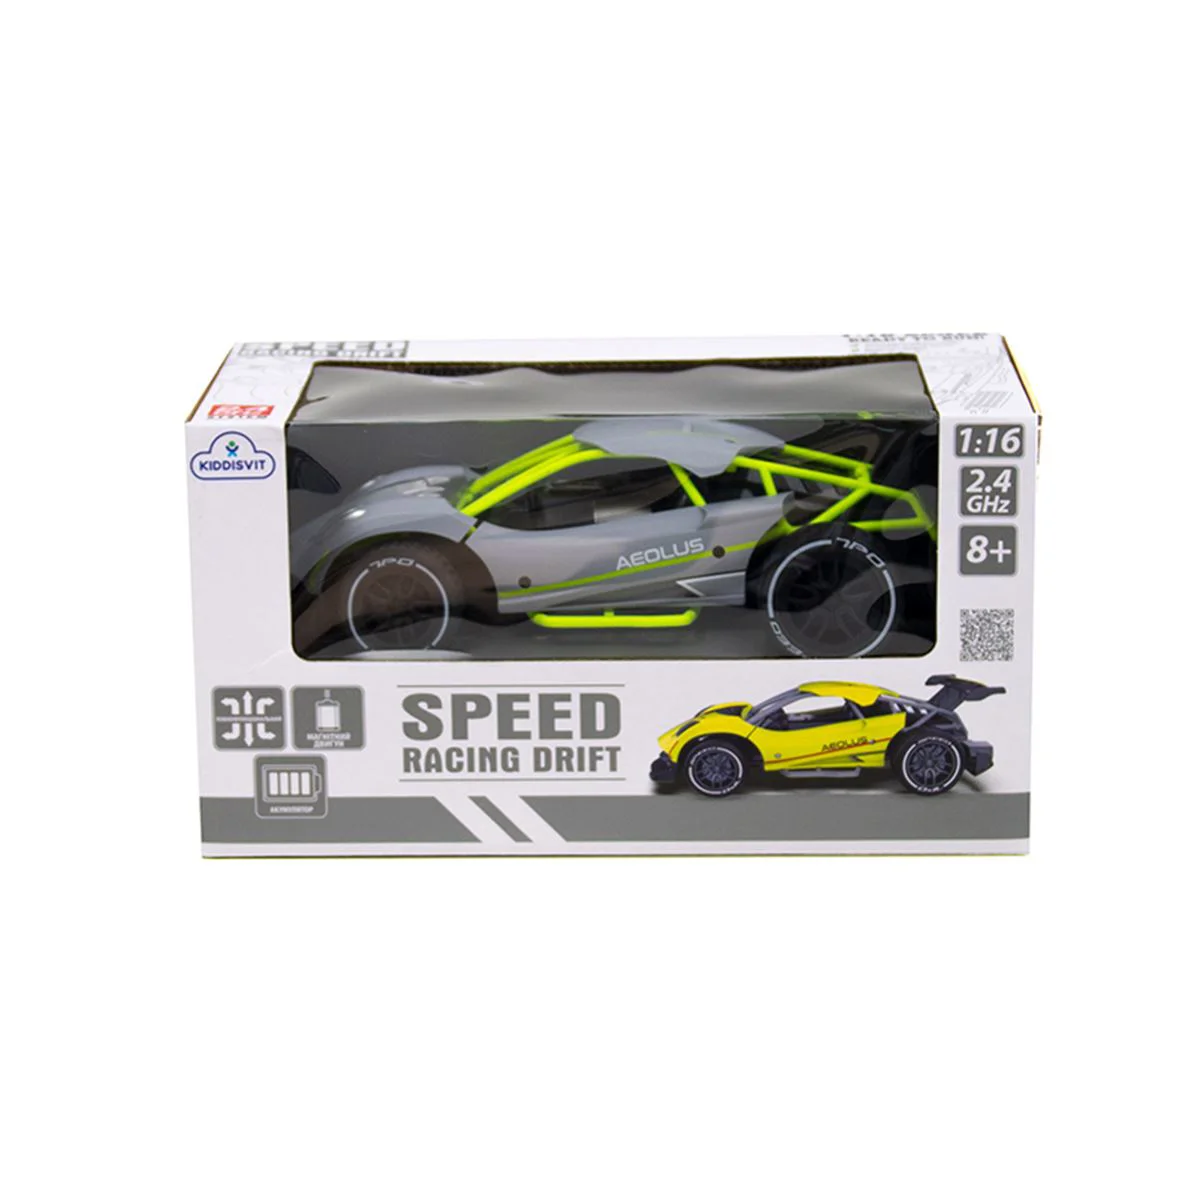 Радиоуправляемый автомобиль Sulong Toys Speed Racing Drift Aeolus, 1:16